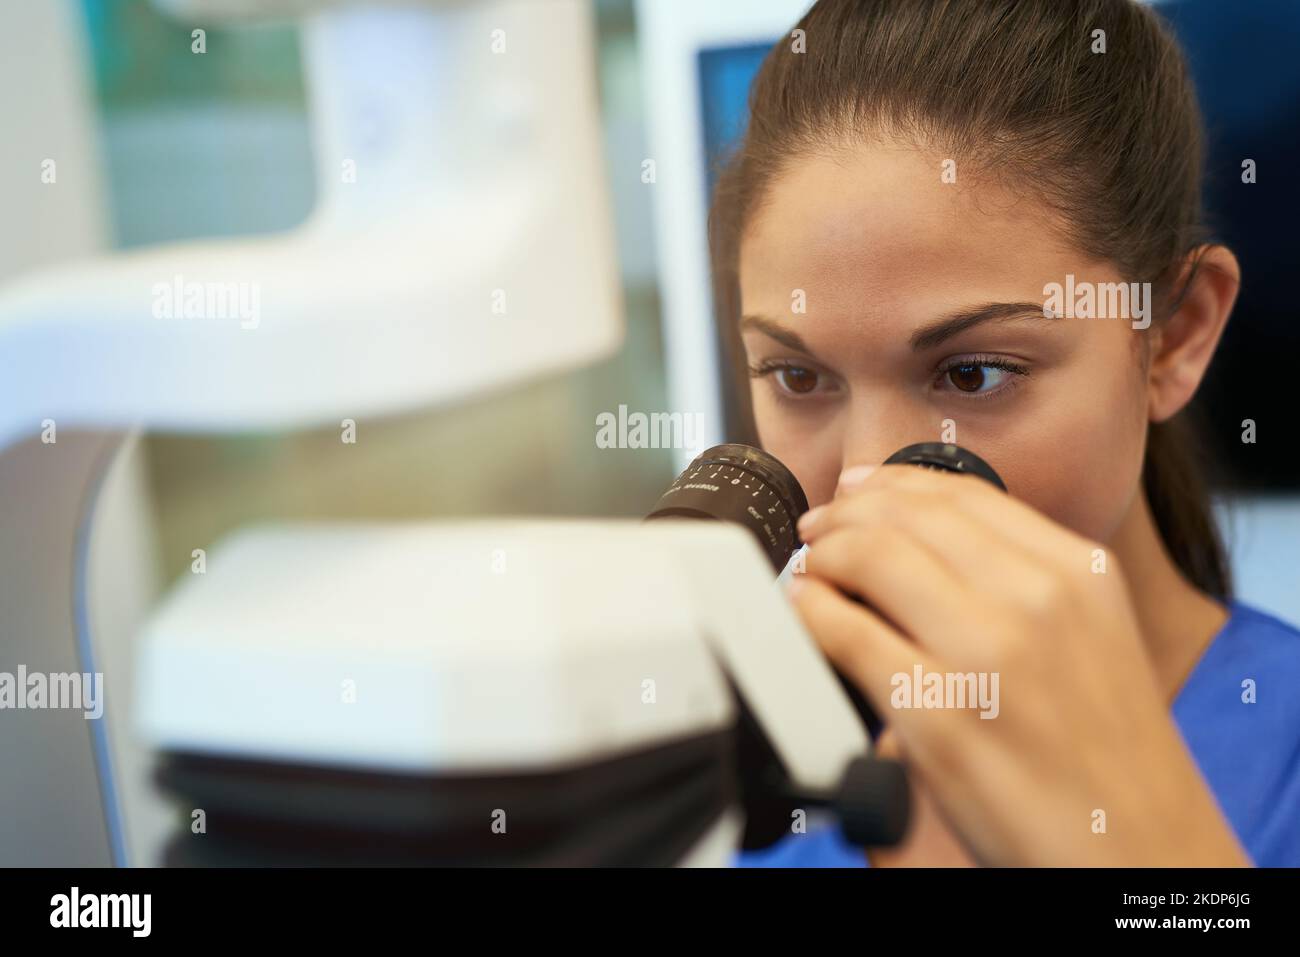 Vediamo cosa abbiamo qui: Un giovane patologo che guarda i campioni al microscopio. Foto Stock